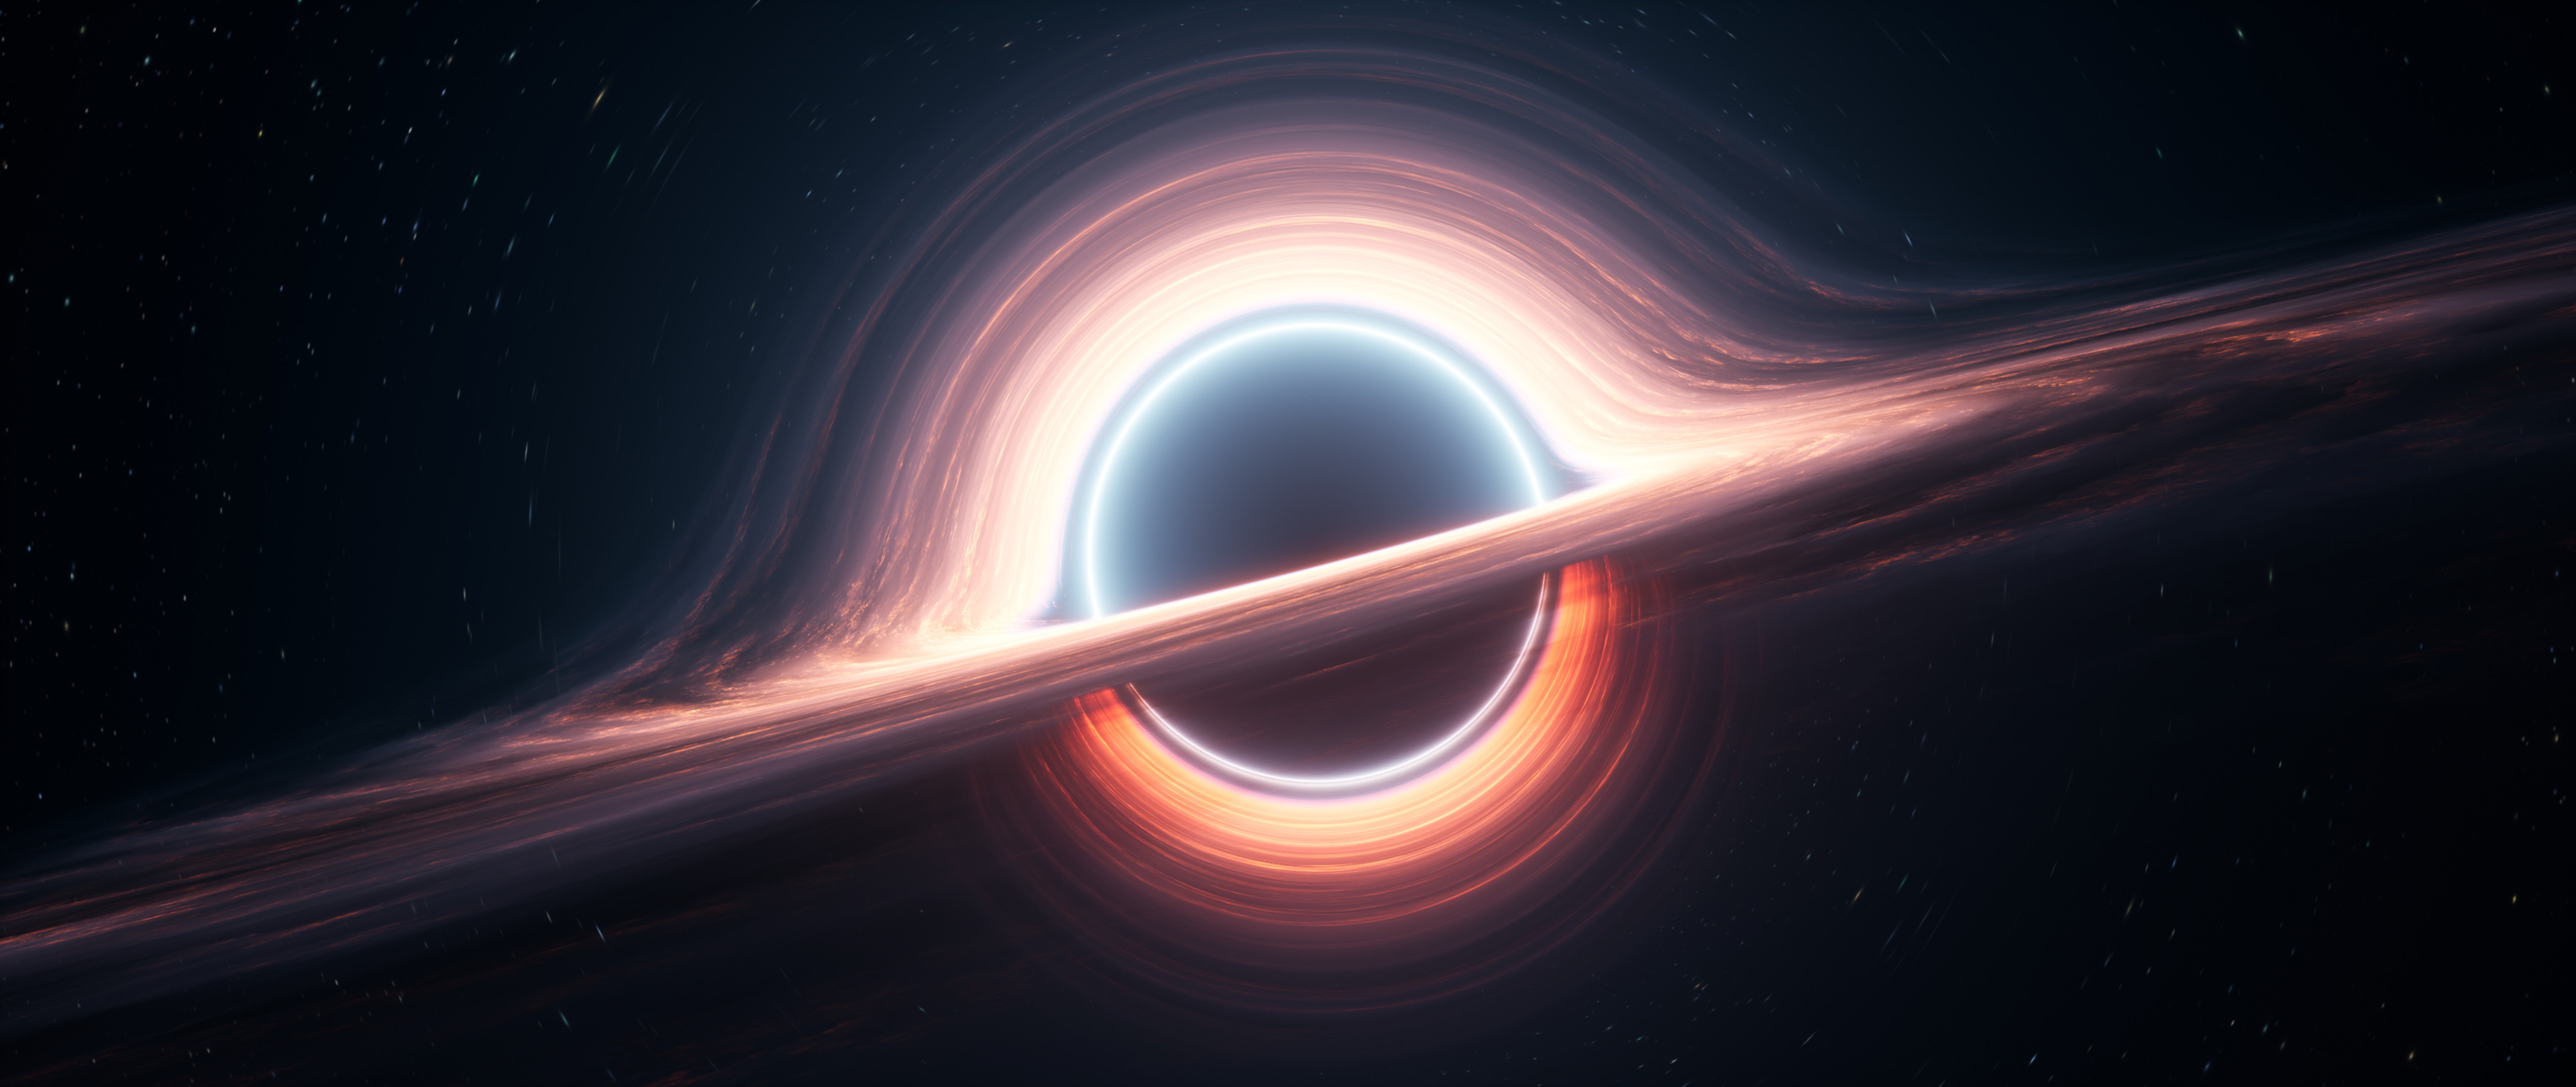 Черная дыра двигается. Gaia bh1 черная дыра. Астрофизика. Земле черную дыру Gaia bh1,. Влияние черной дыры на землю.